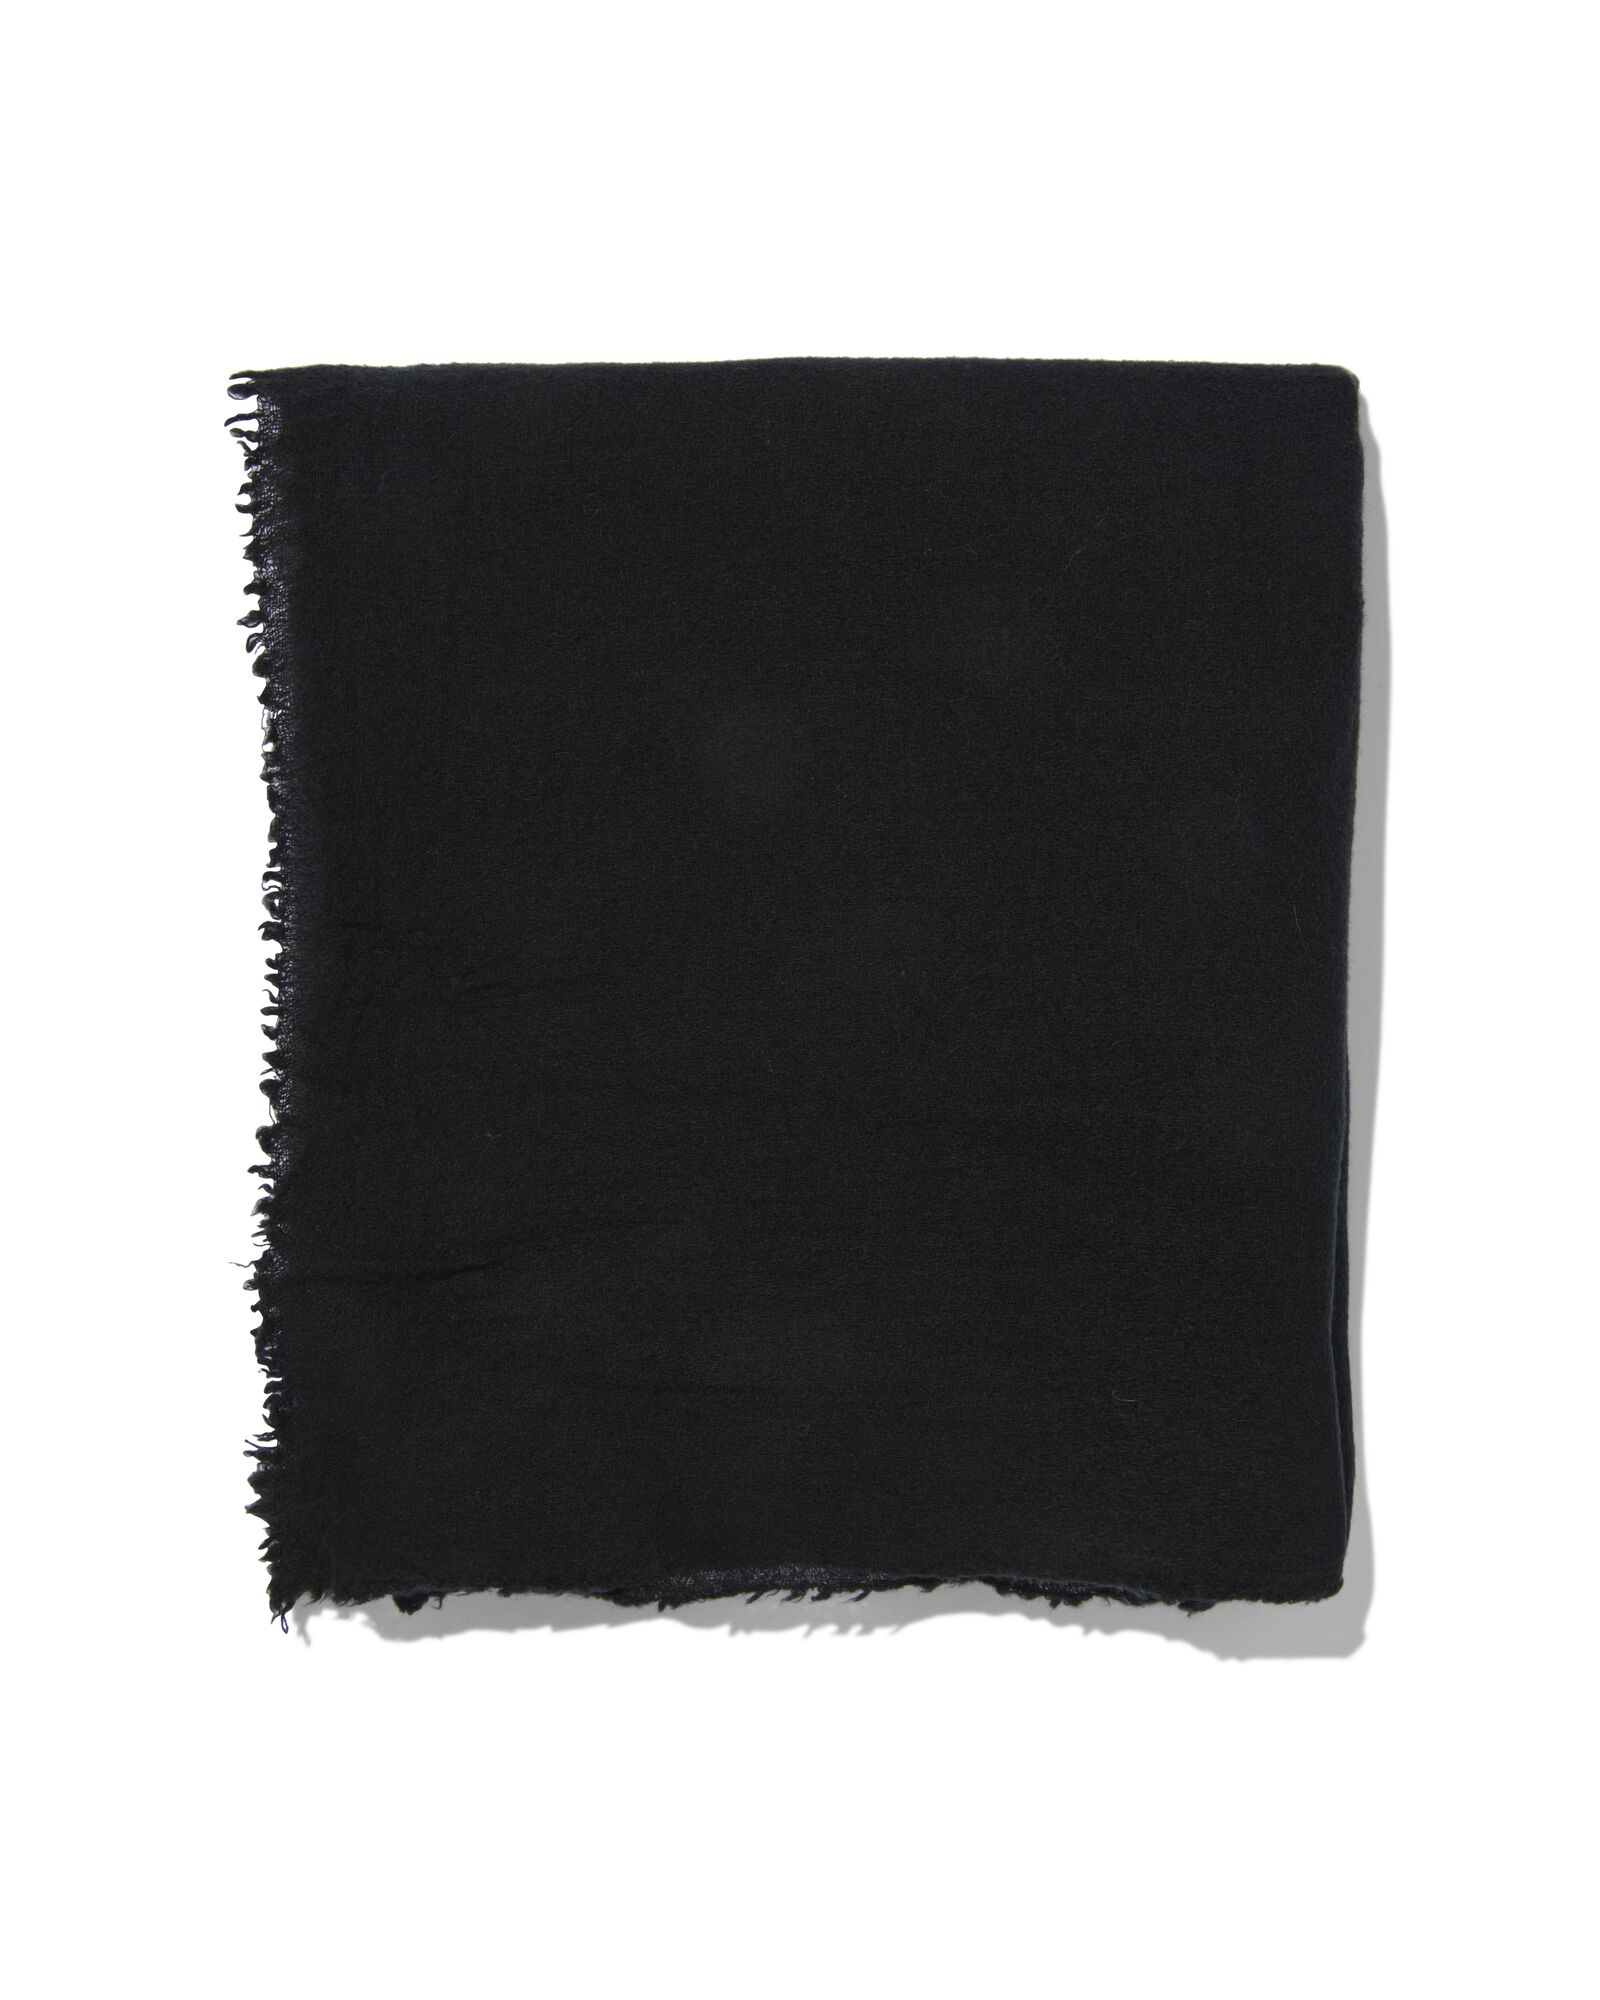 Damen-Schal mit Wolle, 200 x 60 cm, schwarz - 1790025 - HEMA